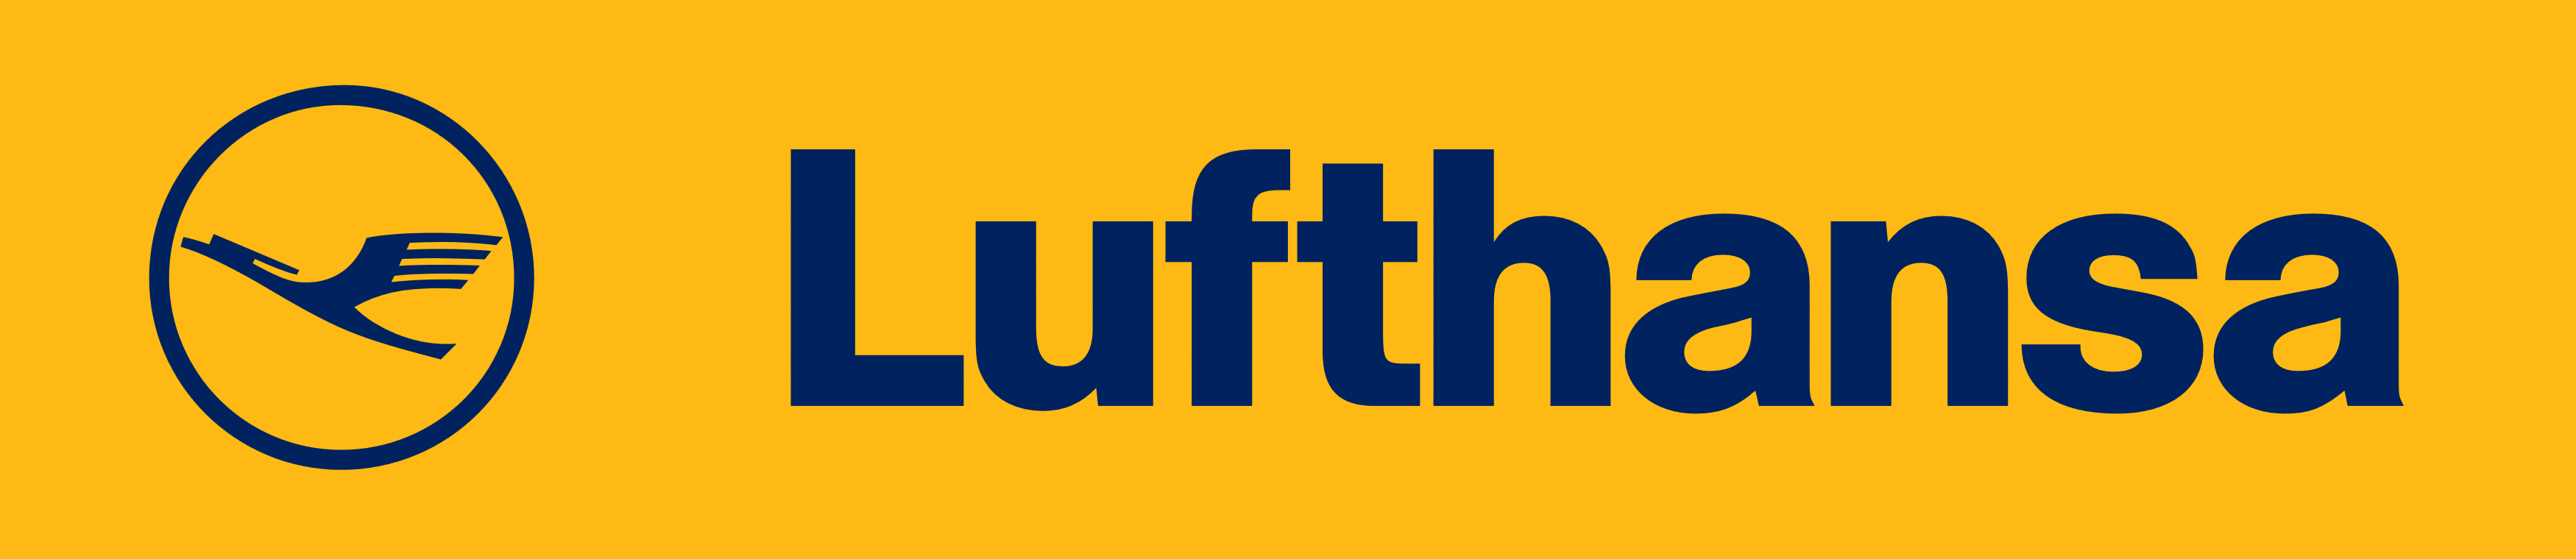 Lufthansa logo, logotype